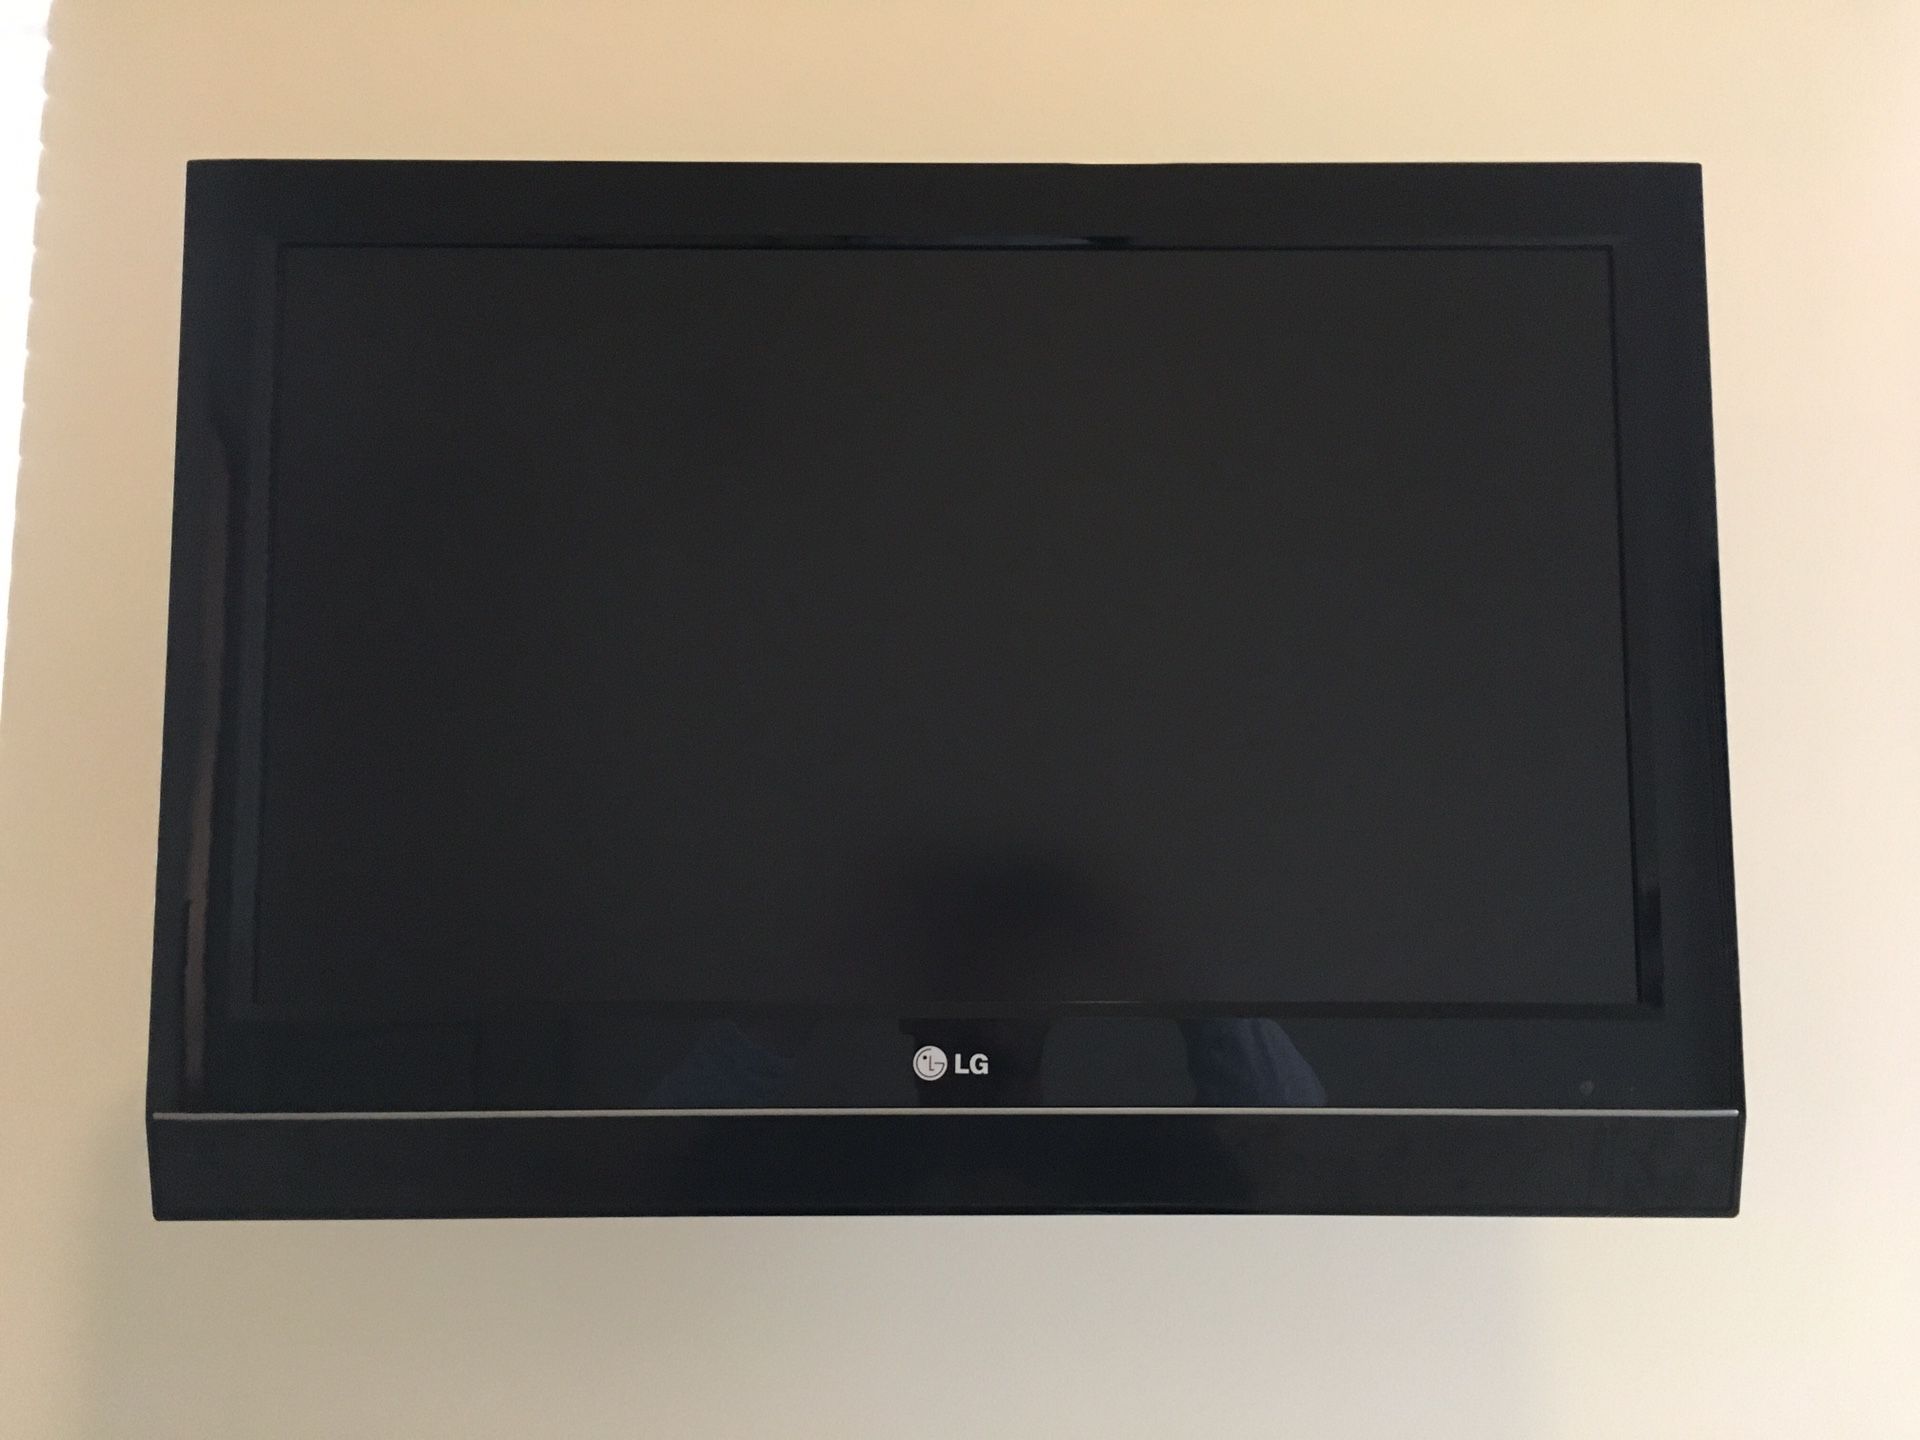 32 inch LG TV